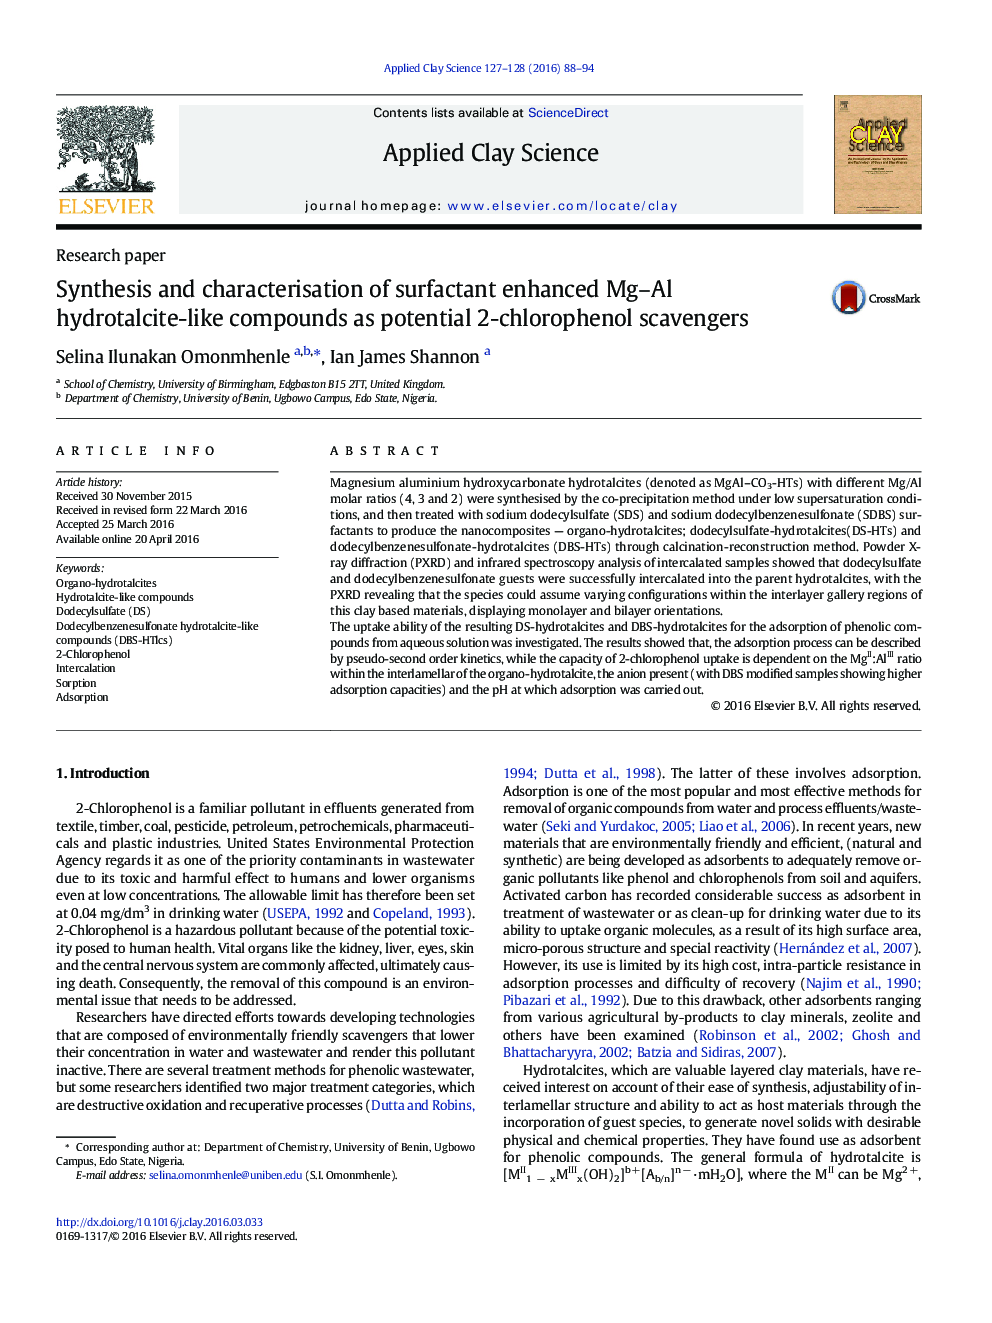 سنتز و تعیین ویژگی های سورفاکتانت ترکیبات هیدروالکتیت مگا آلومینیوم را به عنوان پتانسیل 2-کلروفنول 